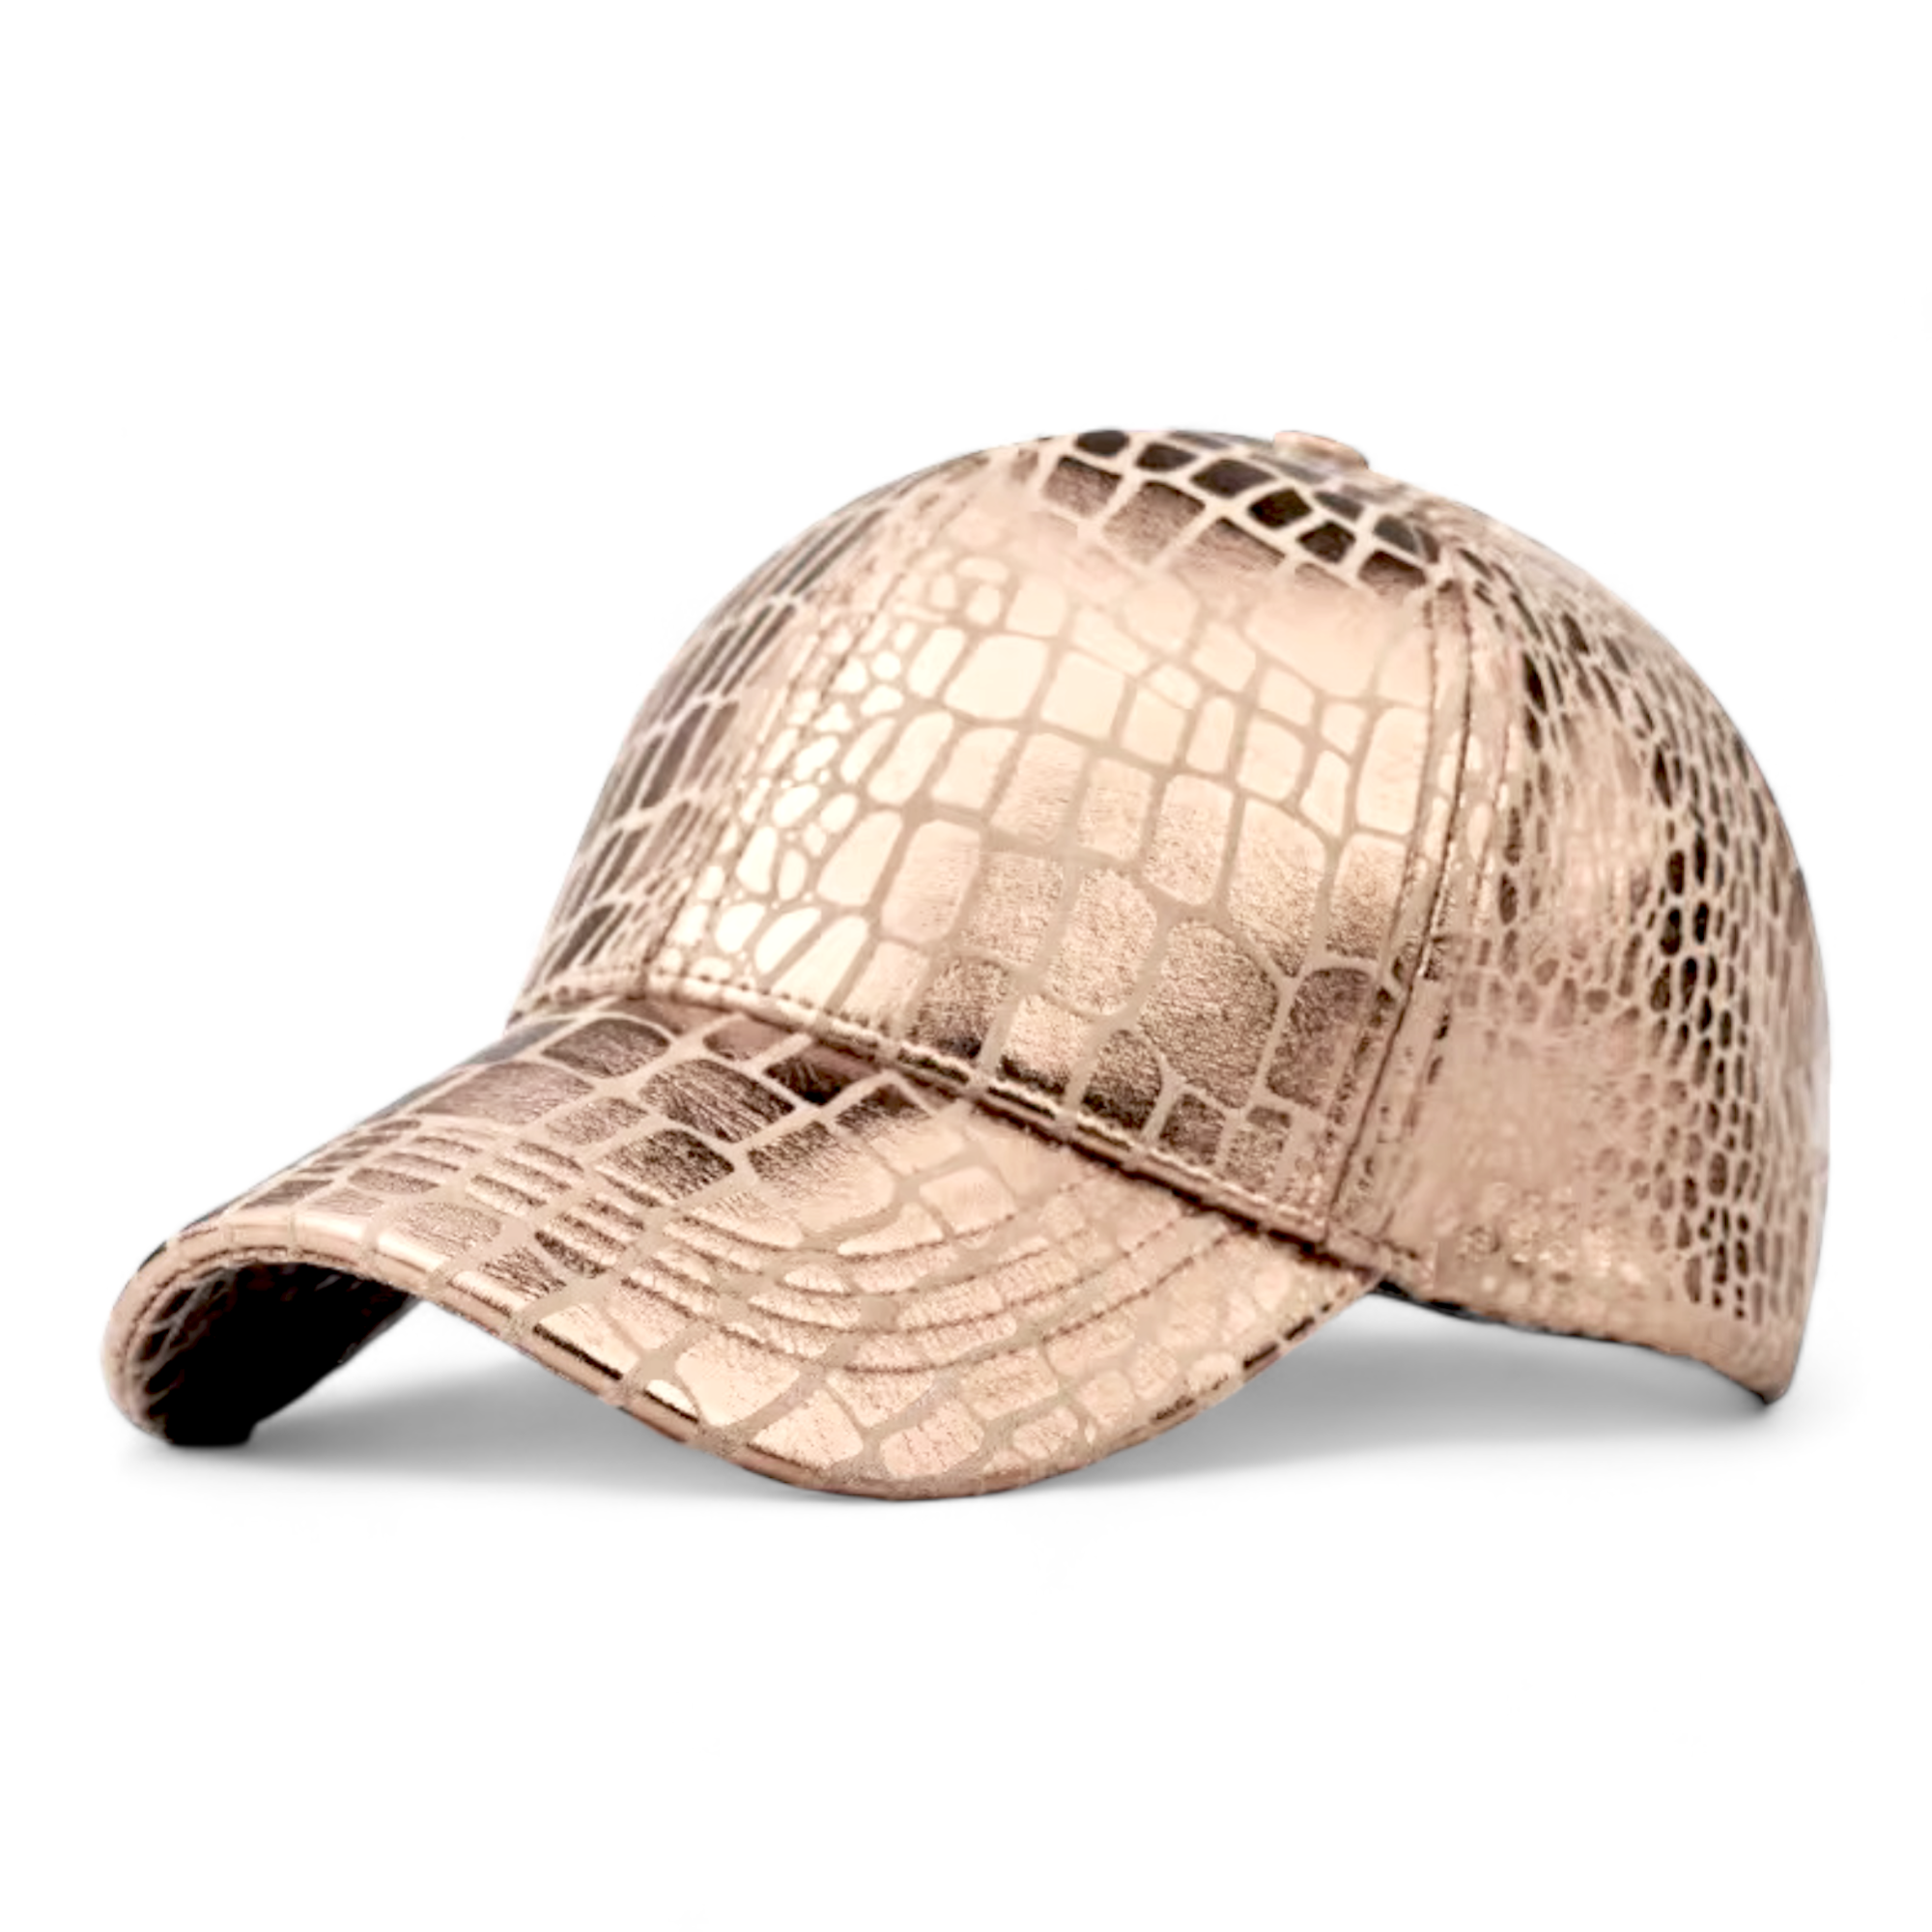 Chokore Crocodile Skin Print Leather Baseball Cap (Gold)